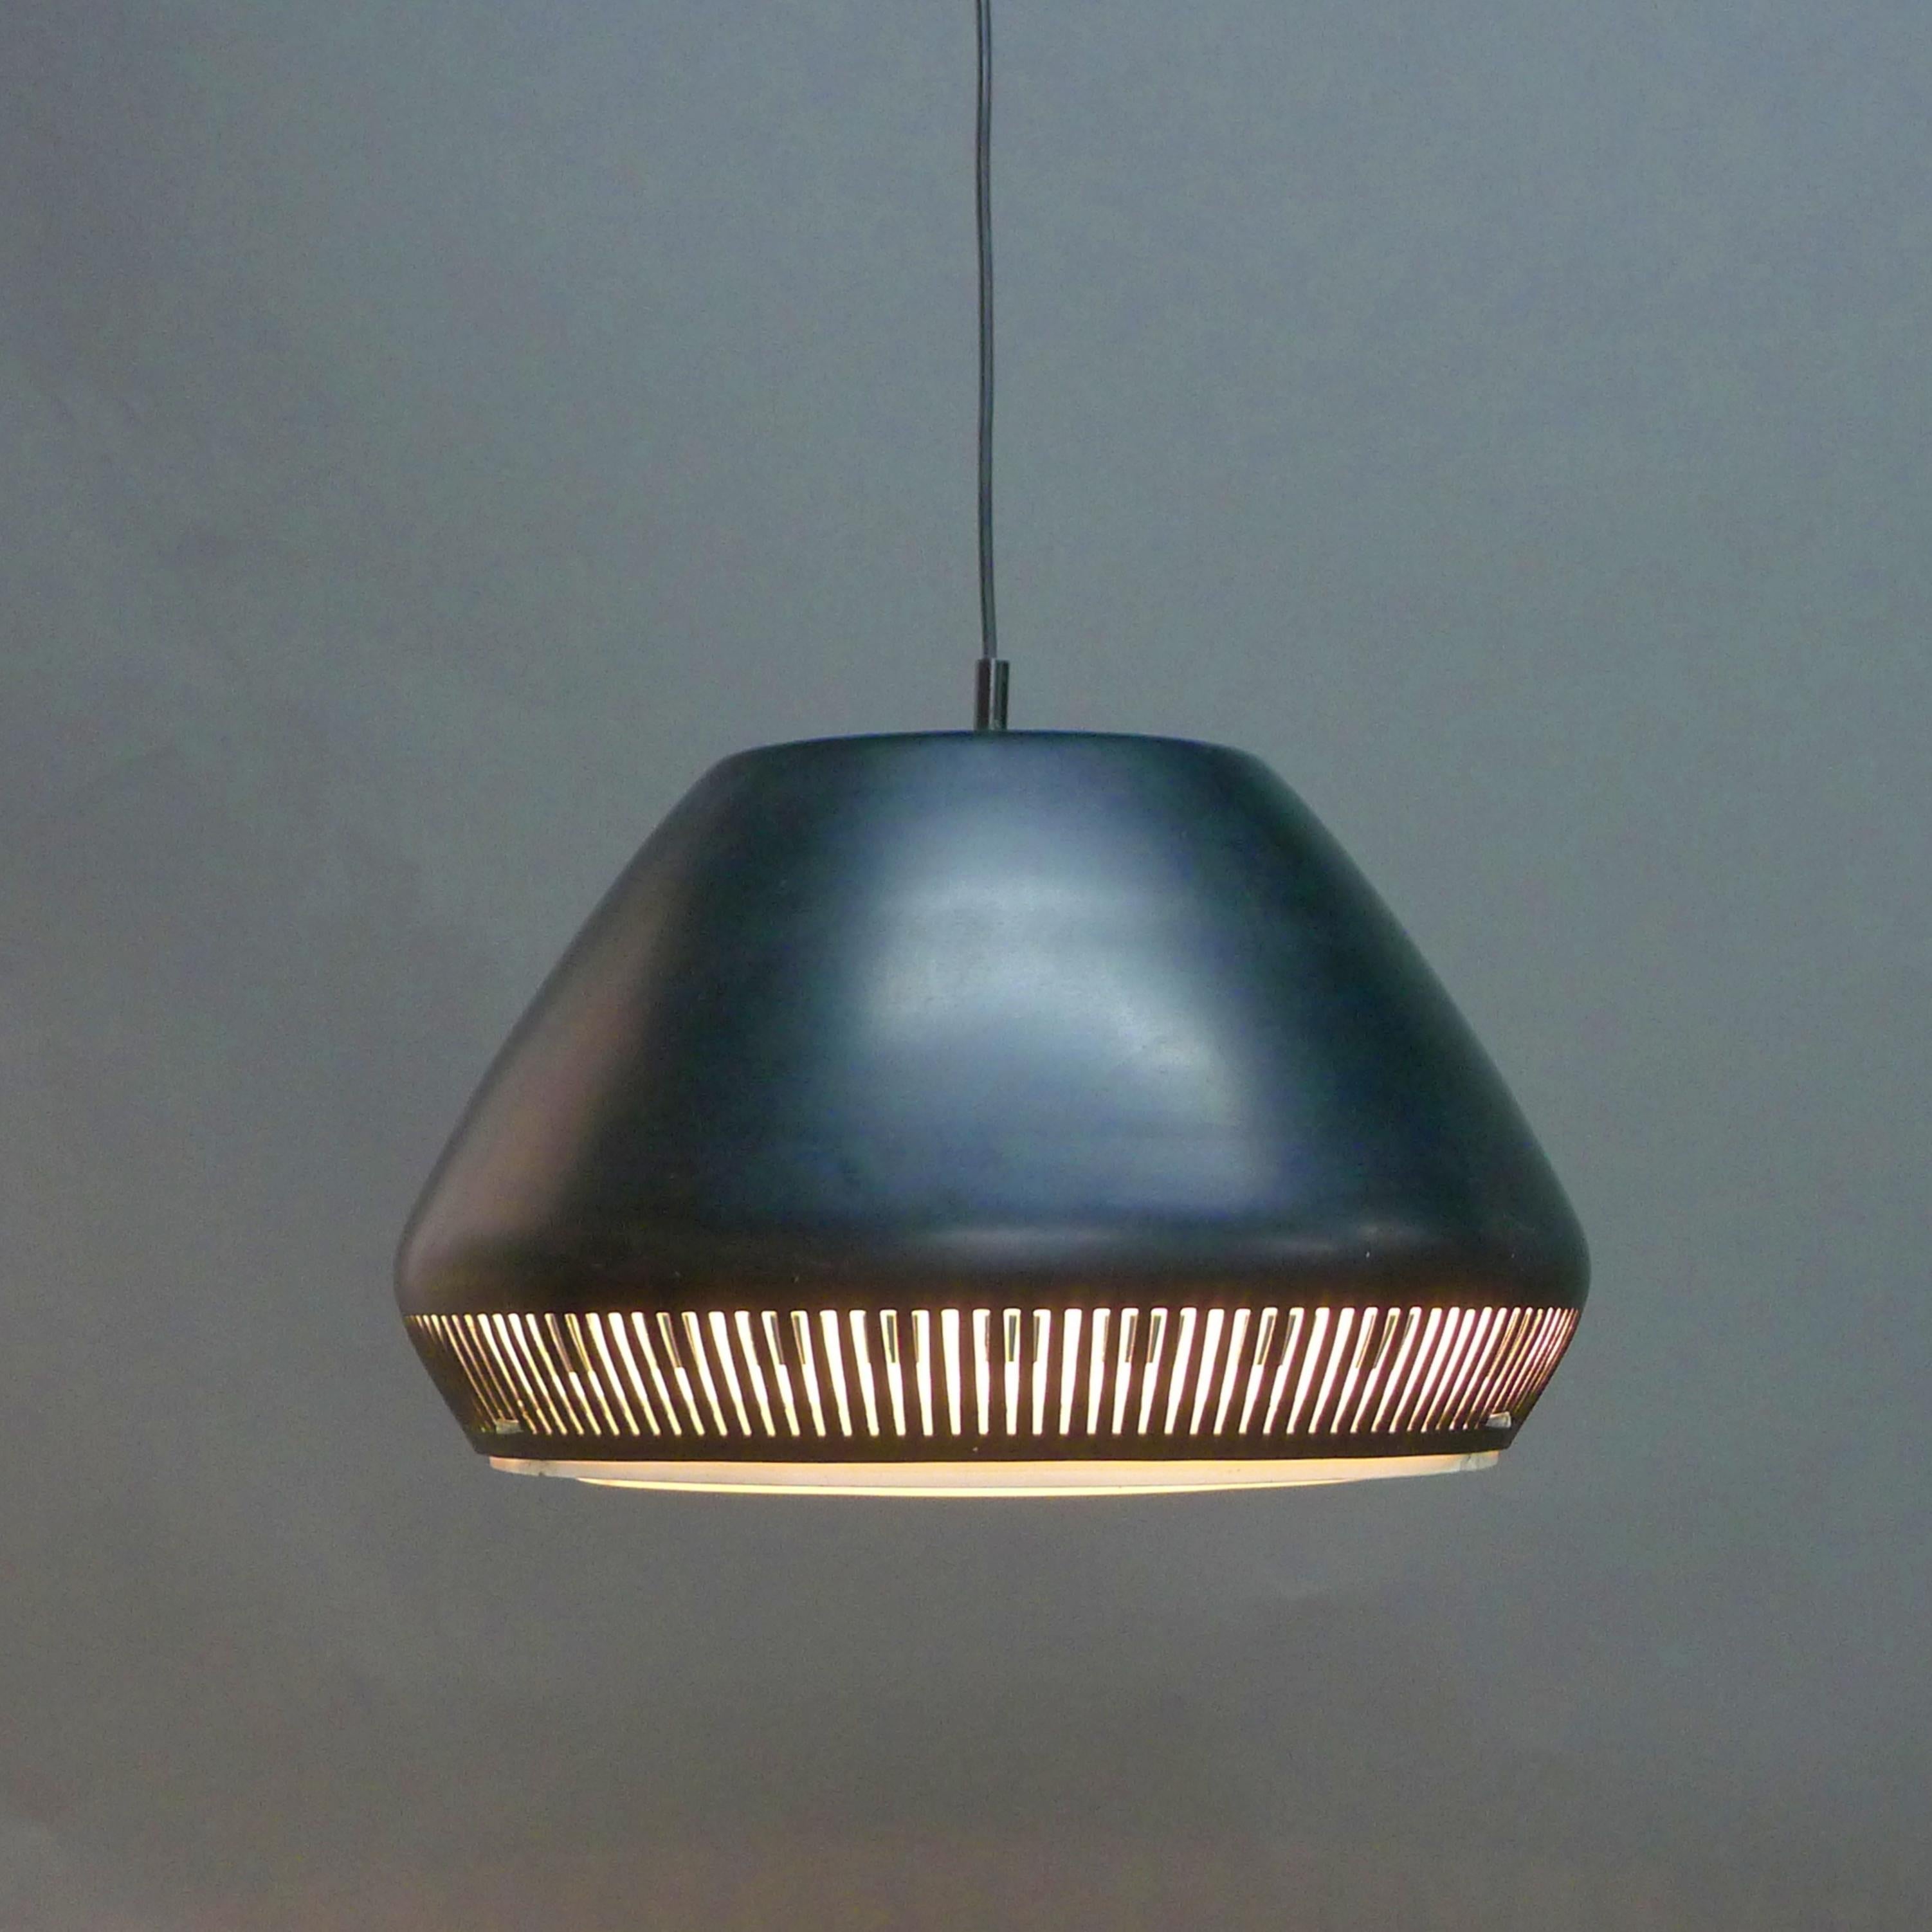 Suspension élégante, attribuée à Gio Ponti pour Greco Illuminazione, Italie, années 1950

Abat-jour incurvé en métal émaillé noir avec diffuseur intégré en anneaux concentriques en métal émaillé blanc qui produisent un bel effet lumineux. 